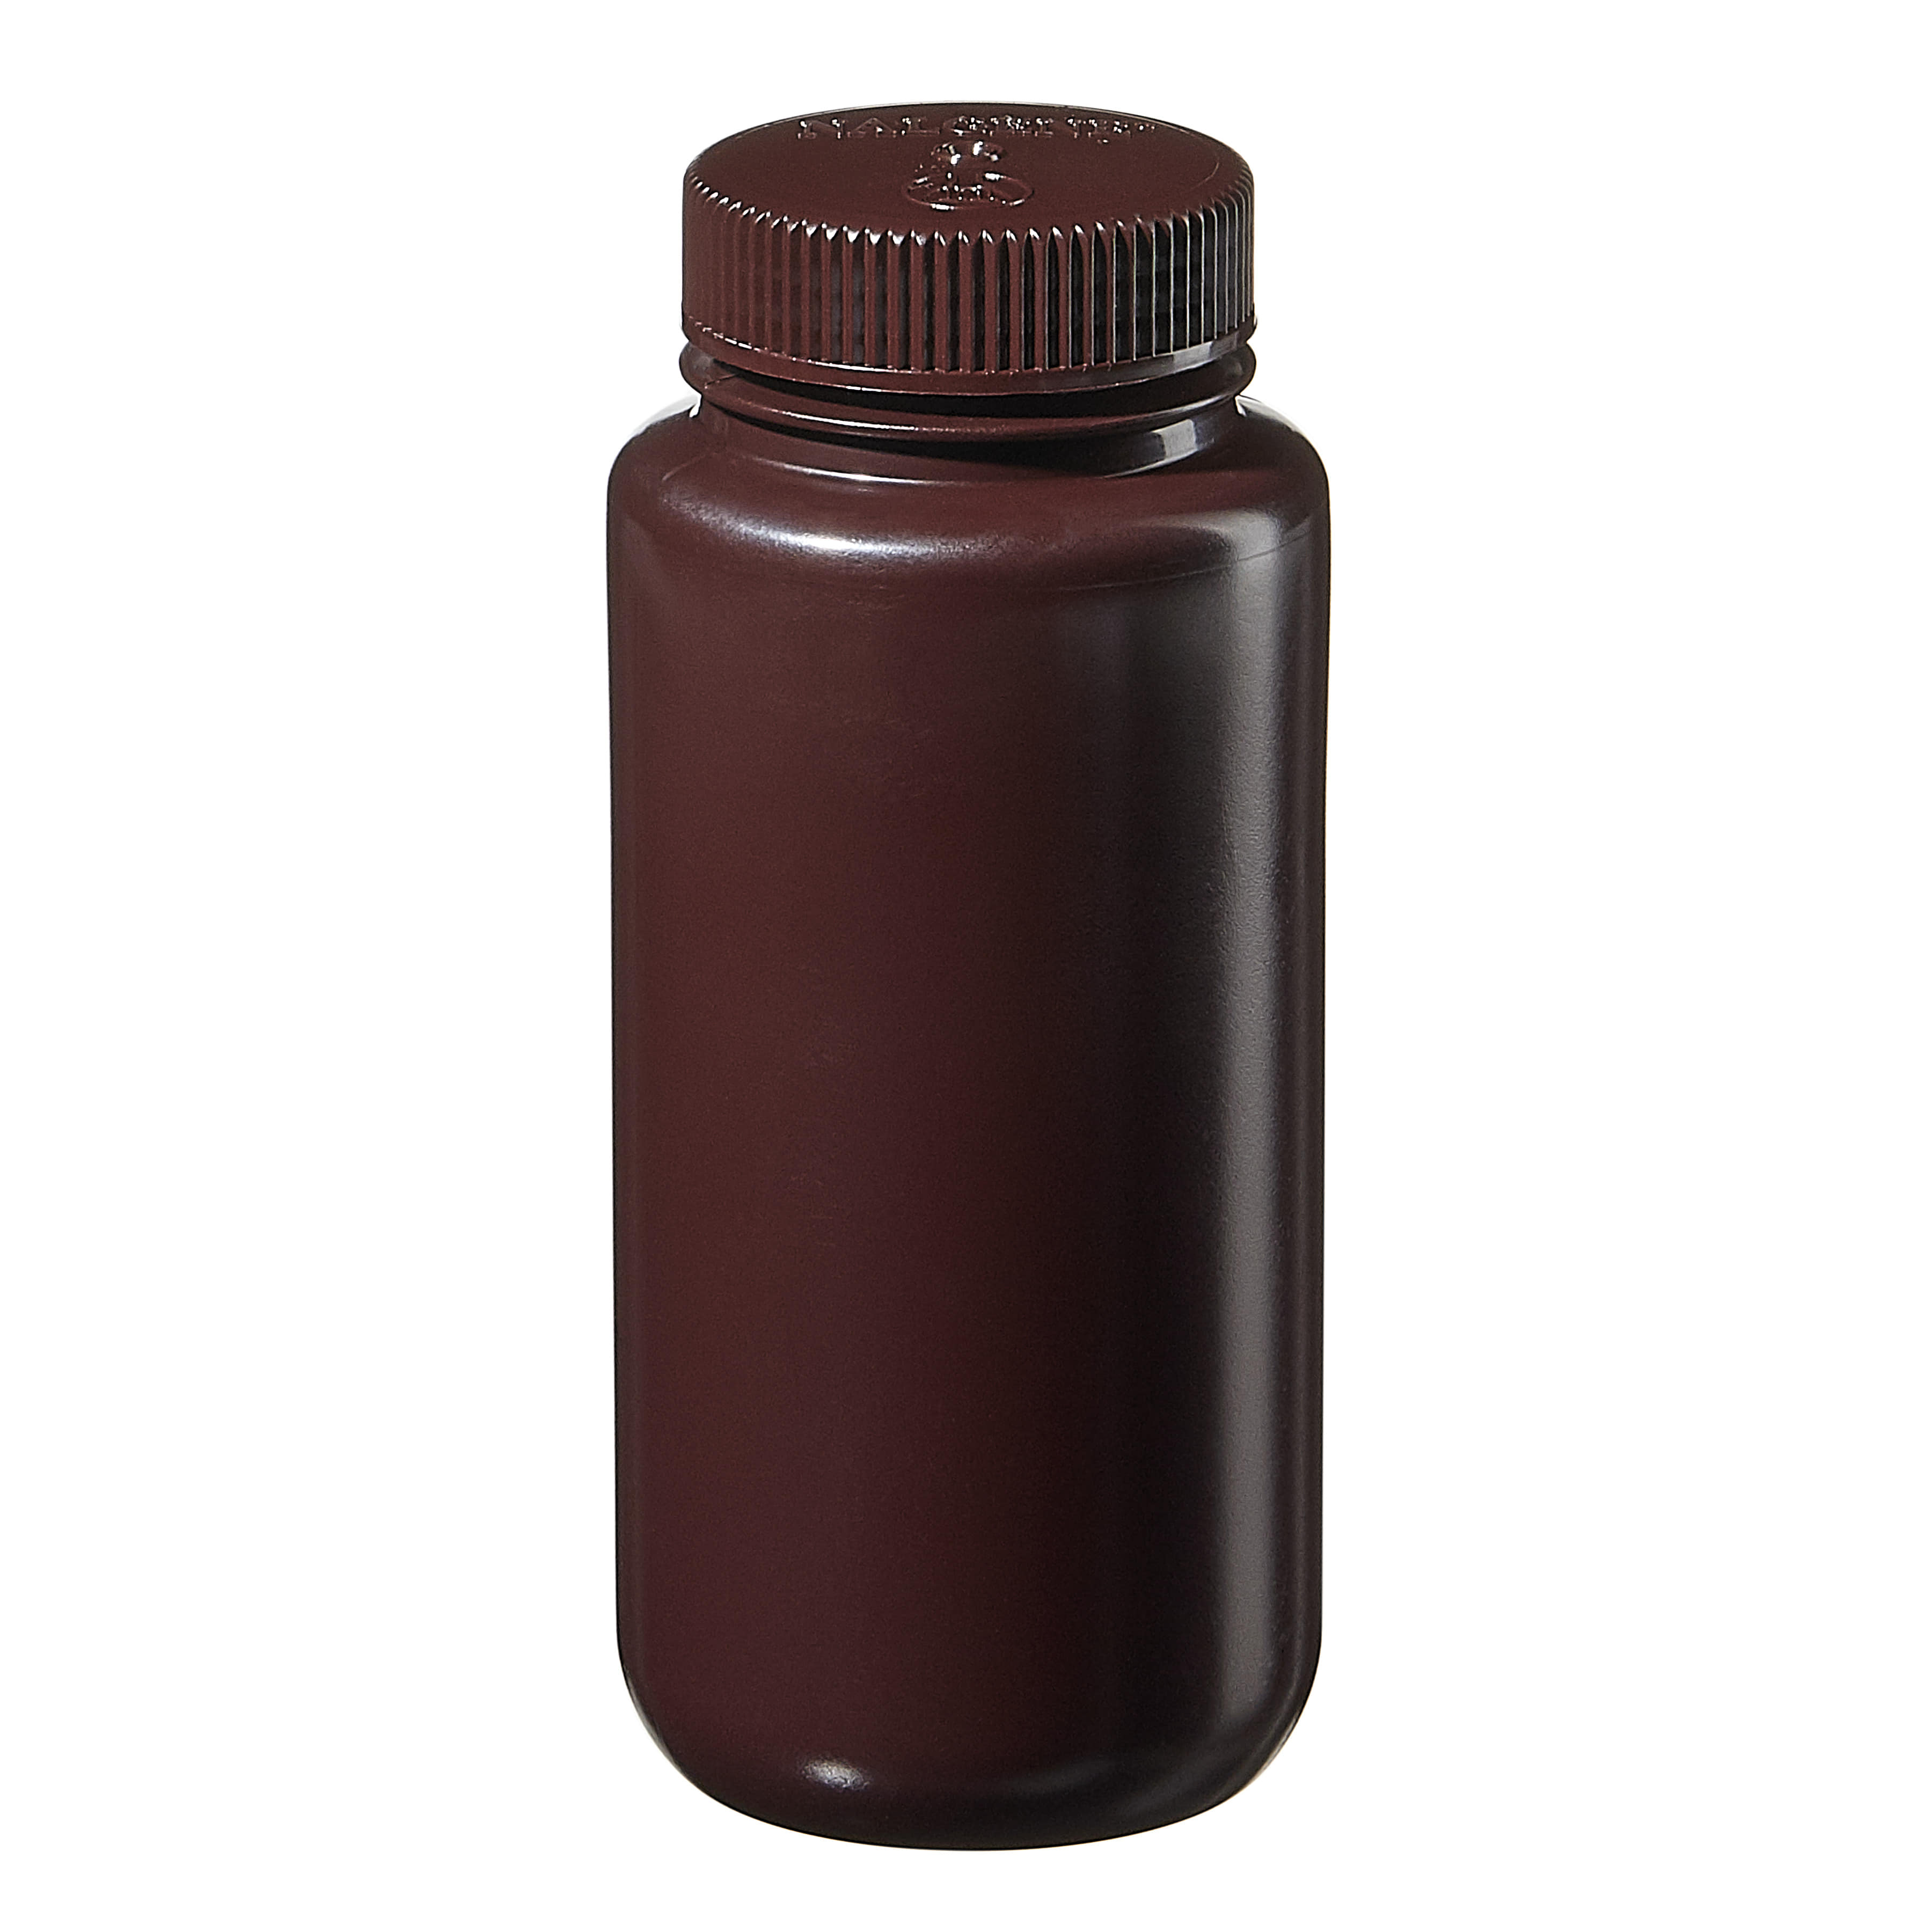 [Thermo Nalgene] 2106-0016 / 500mL Nalgene Wide-Mouth Lab Quality Amber HDPE Bottle